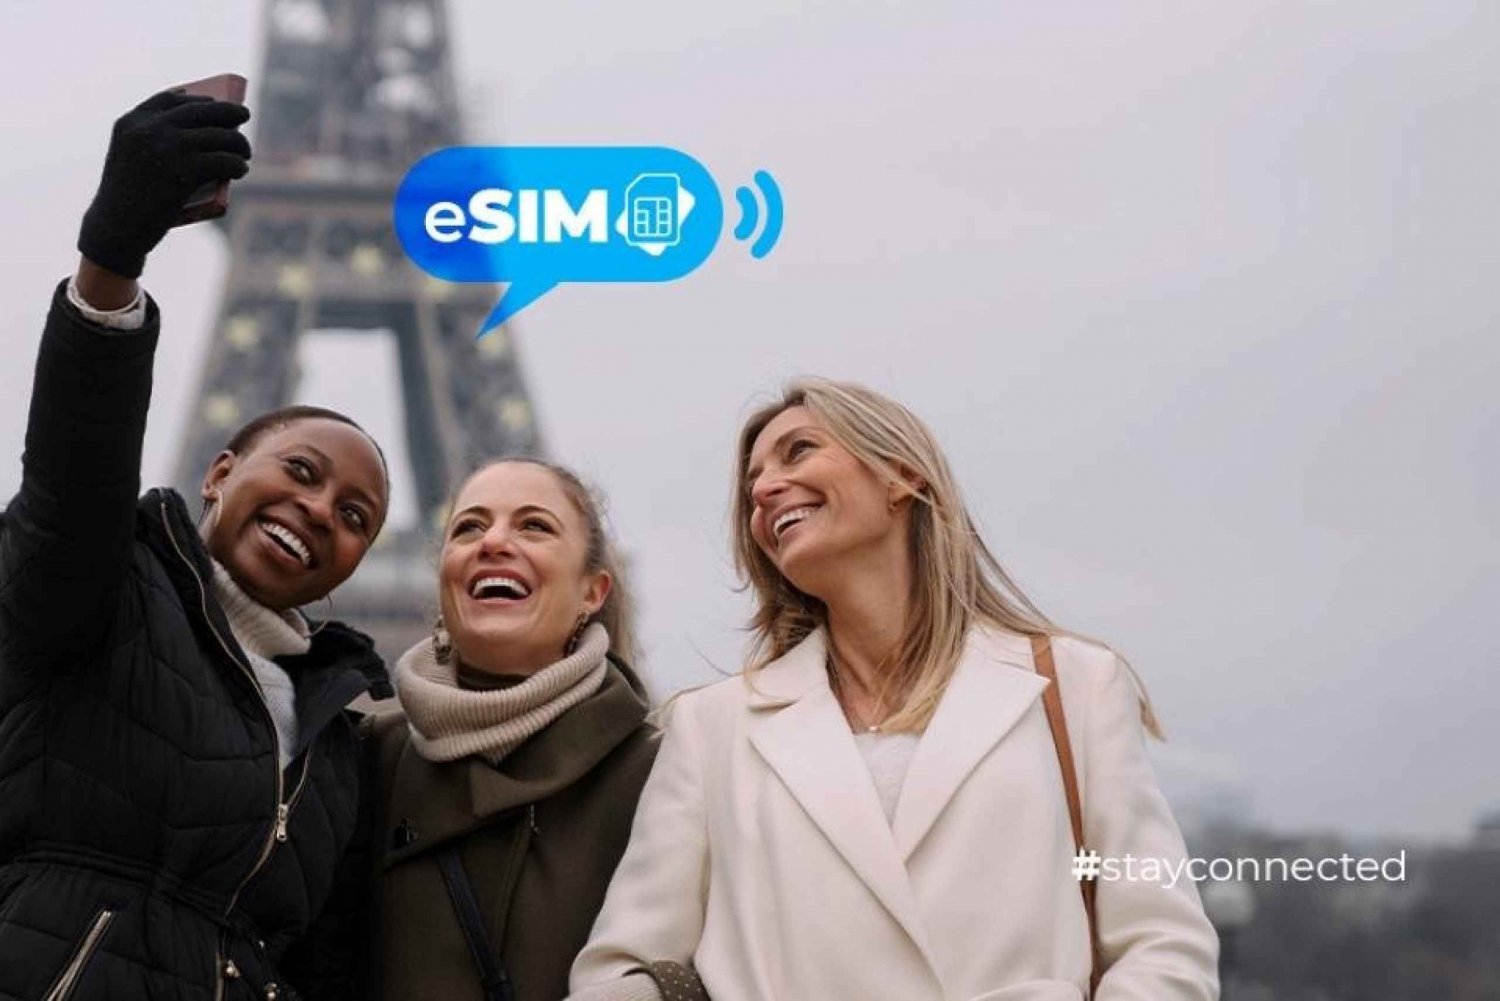 Cannes ja Ranska: eSIM-mobiilidatan avulla: Rajoittamaton EU-internetyhteys